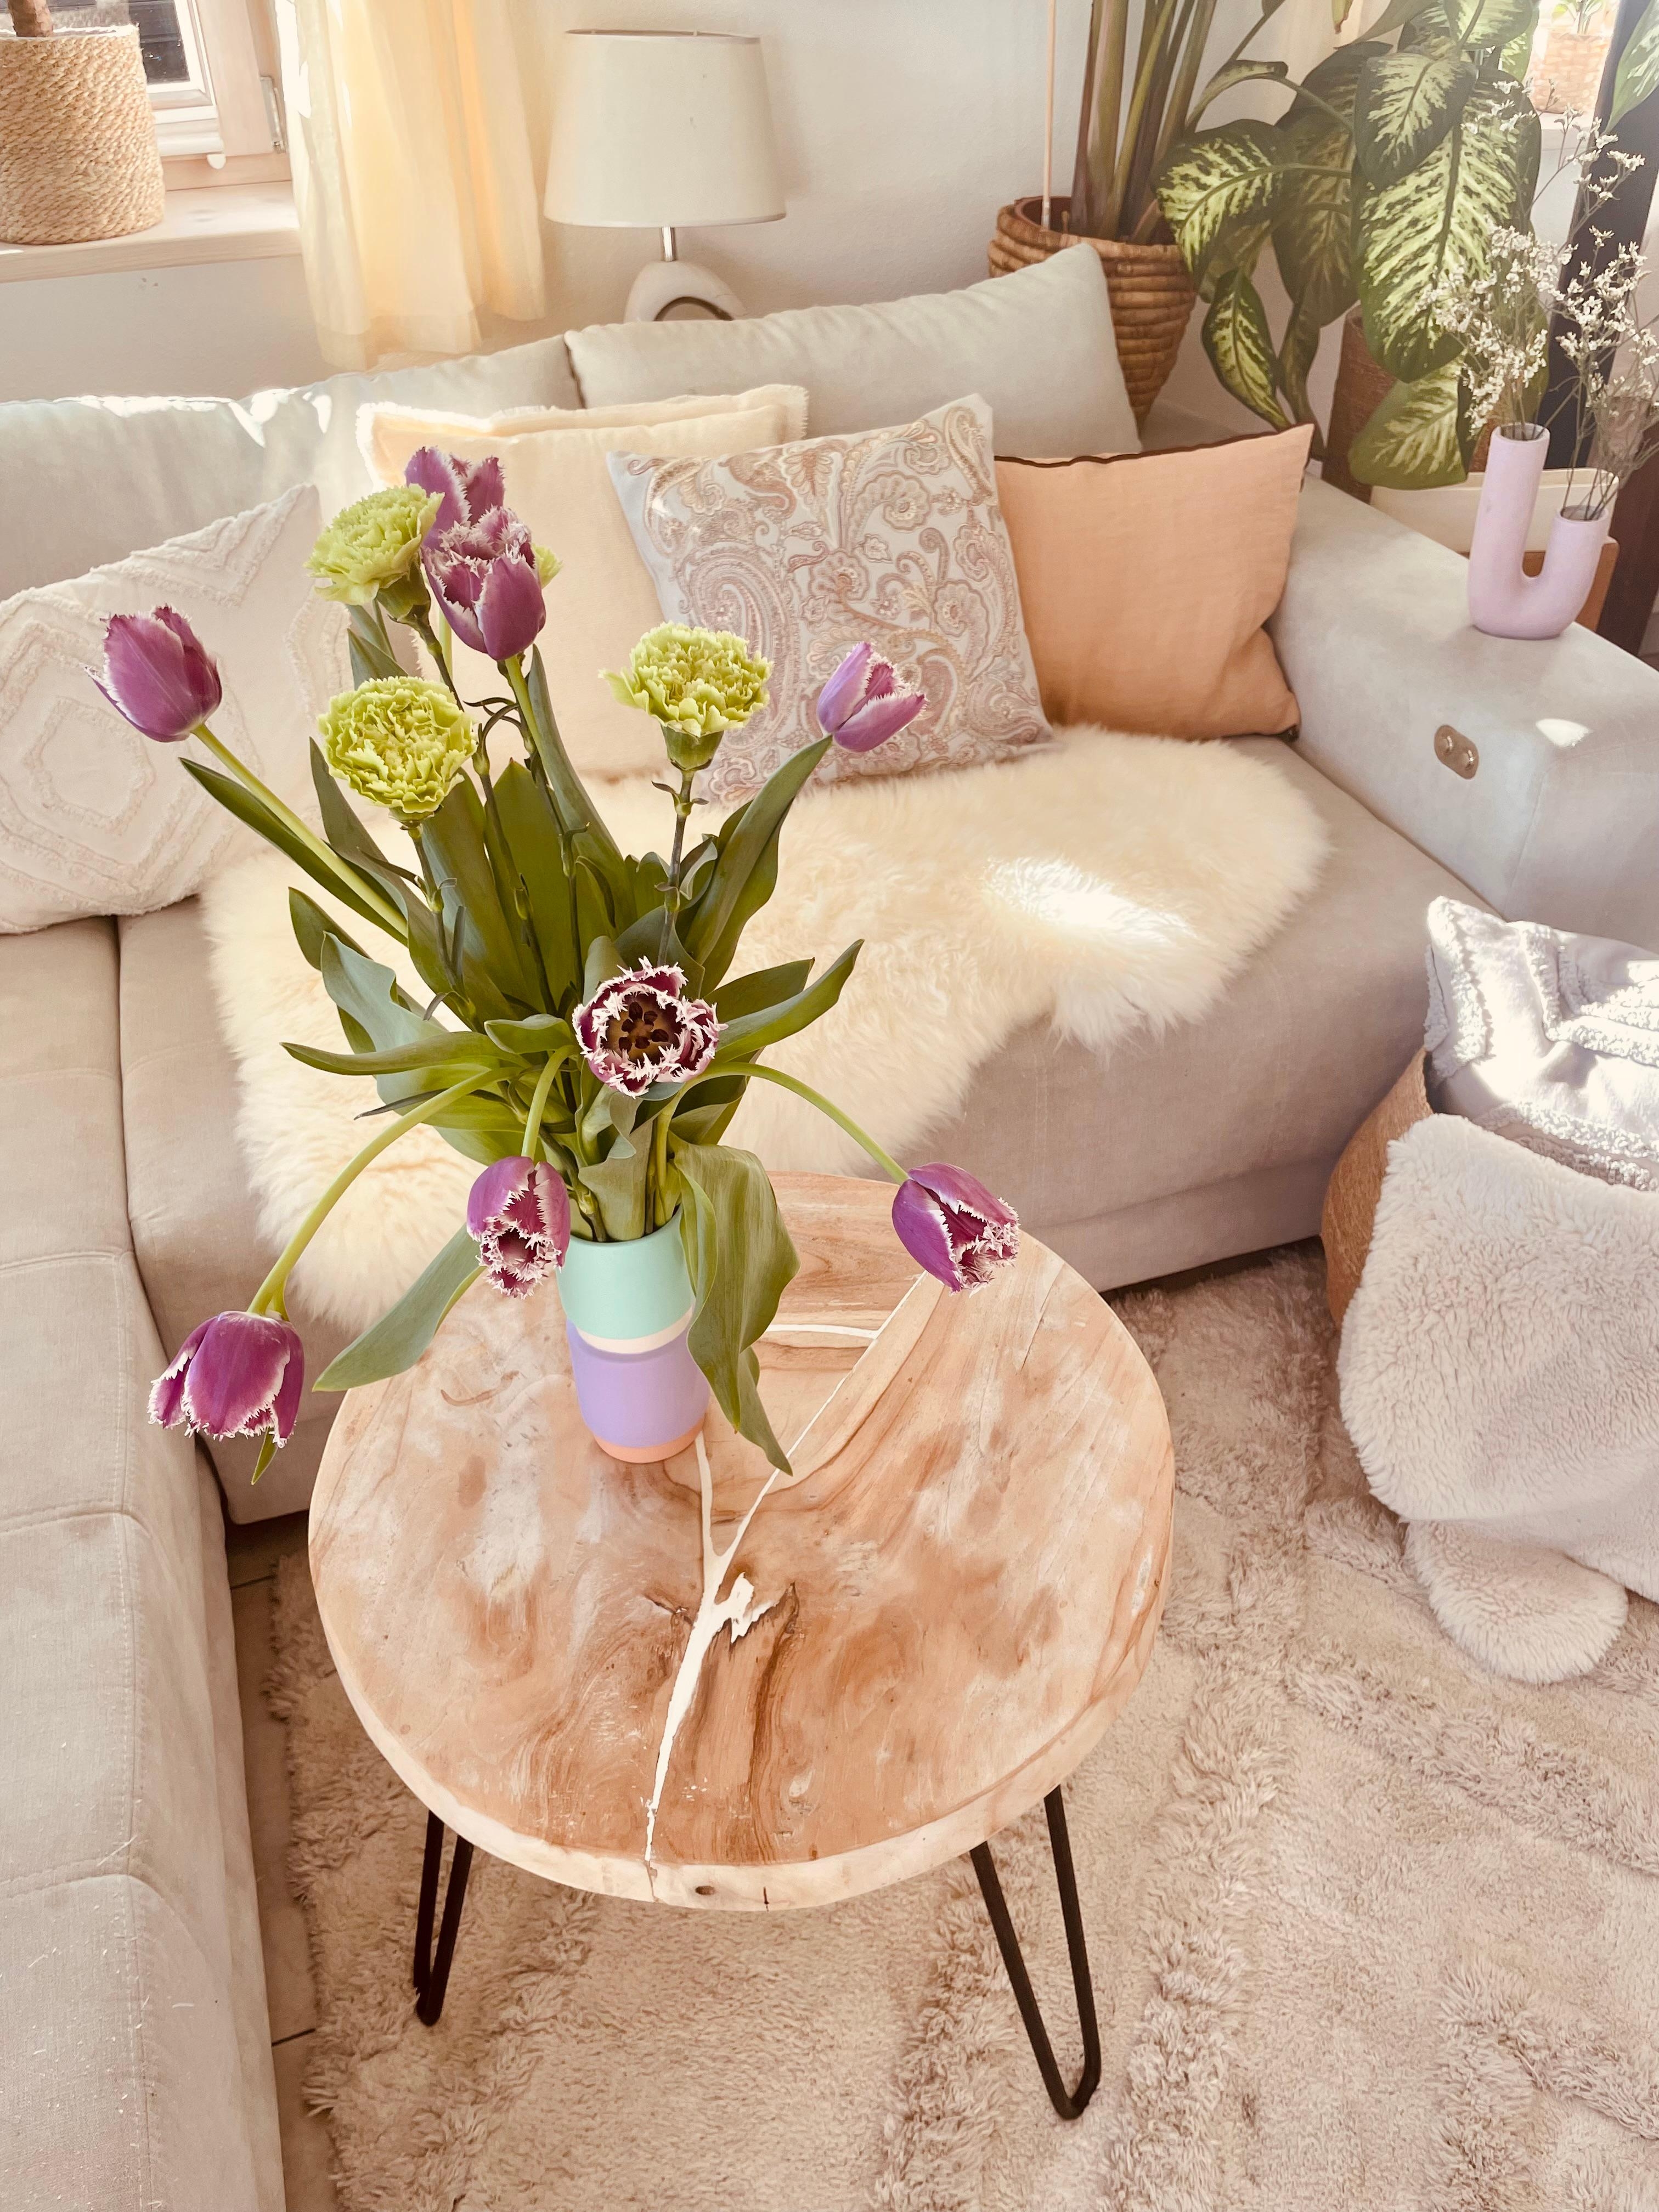 Helle Pastellfarben und warme Wohnaccessoires sind für mich die perfekte Kombi. #modern #pastell #wohnzimmer #couchstyle #blumen #vase 